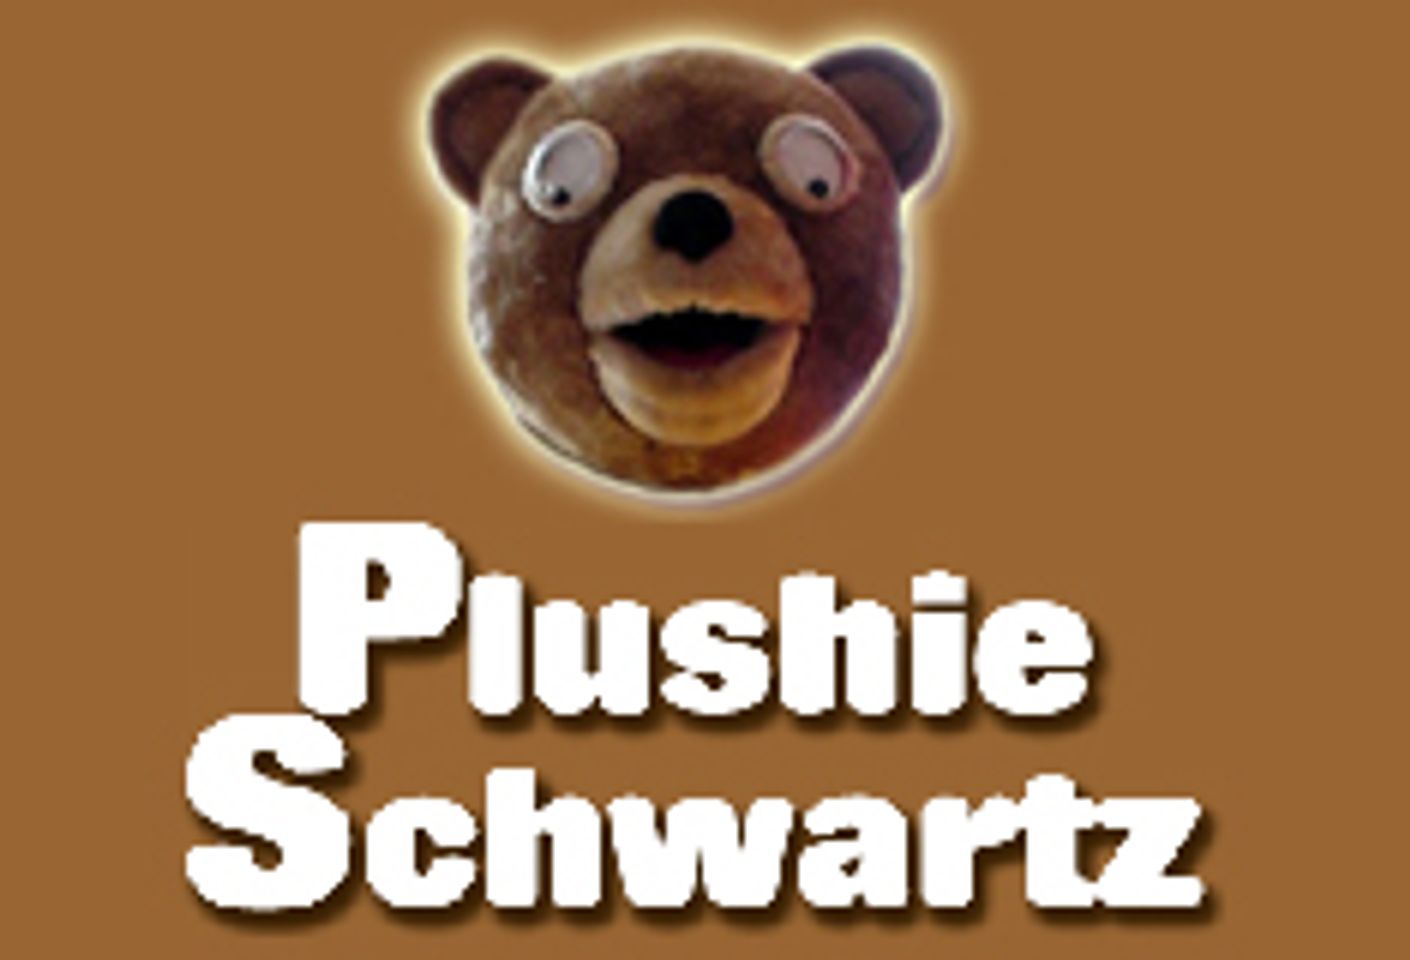 Plushie Schwartz Launches Blog